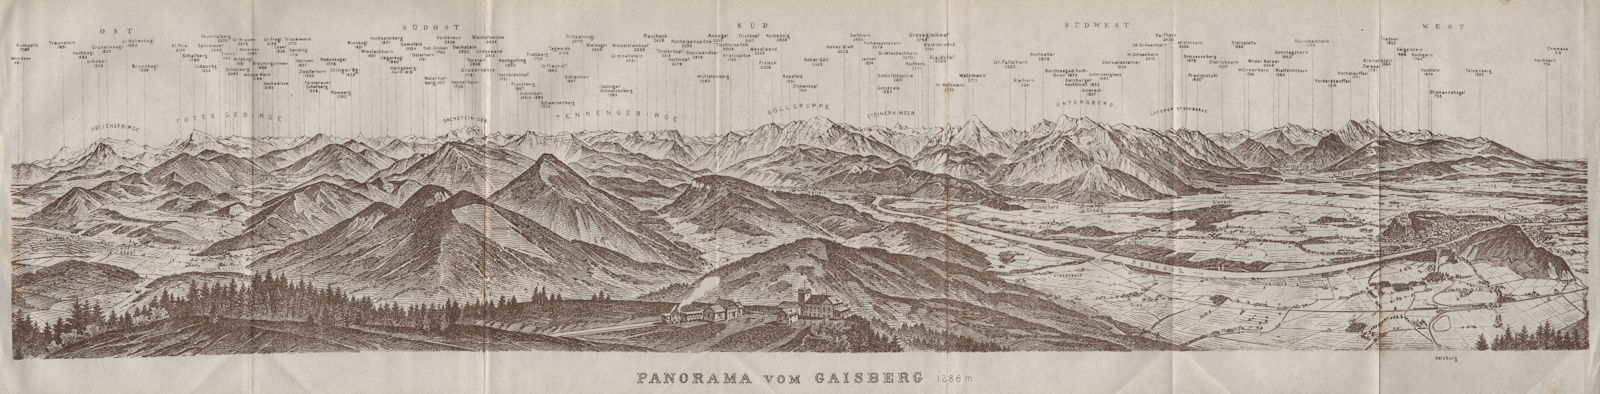 Associate Product PANORAMA VOM GAISBERG. Salzburg. Salzach valley. Austria Österreich 1923 map